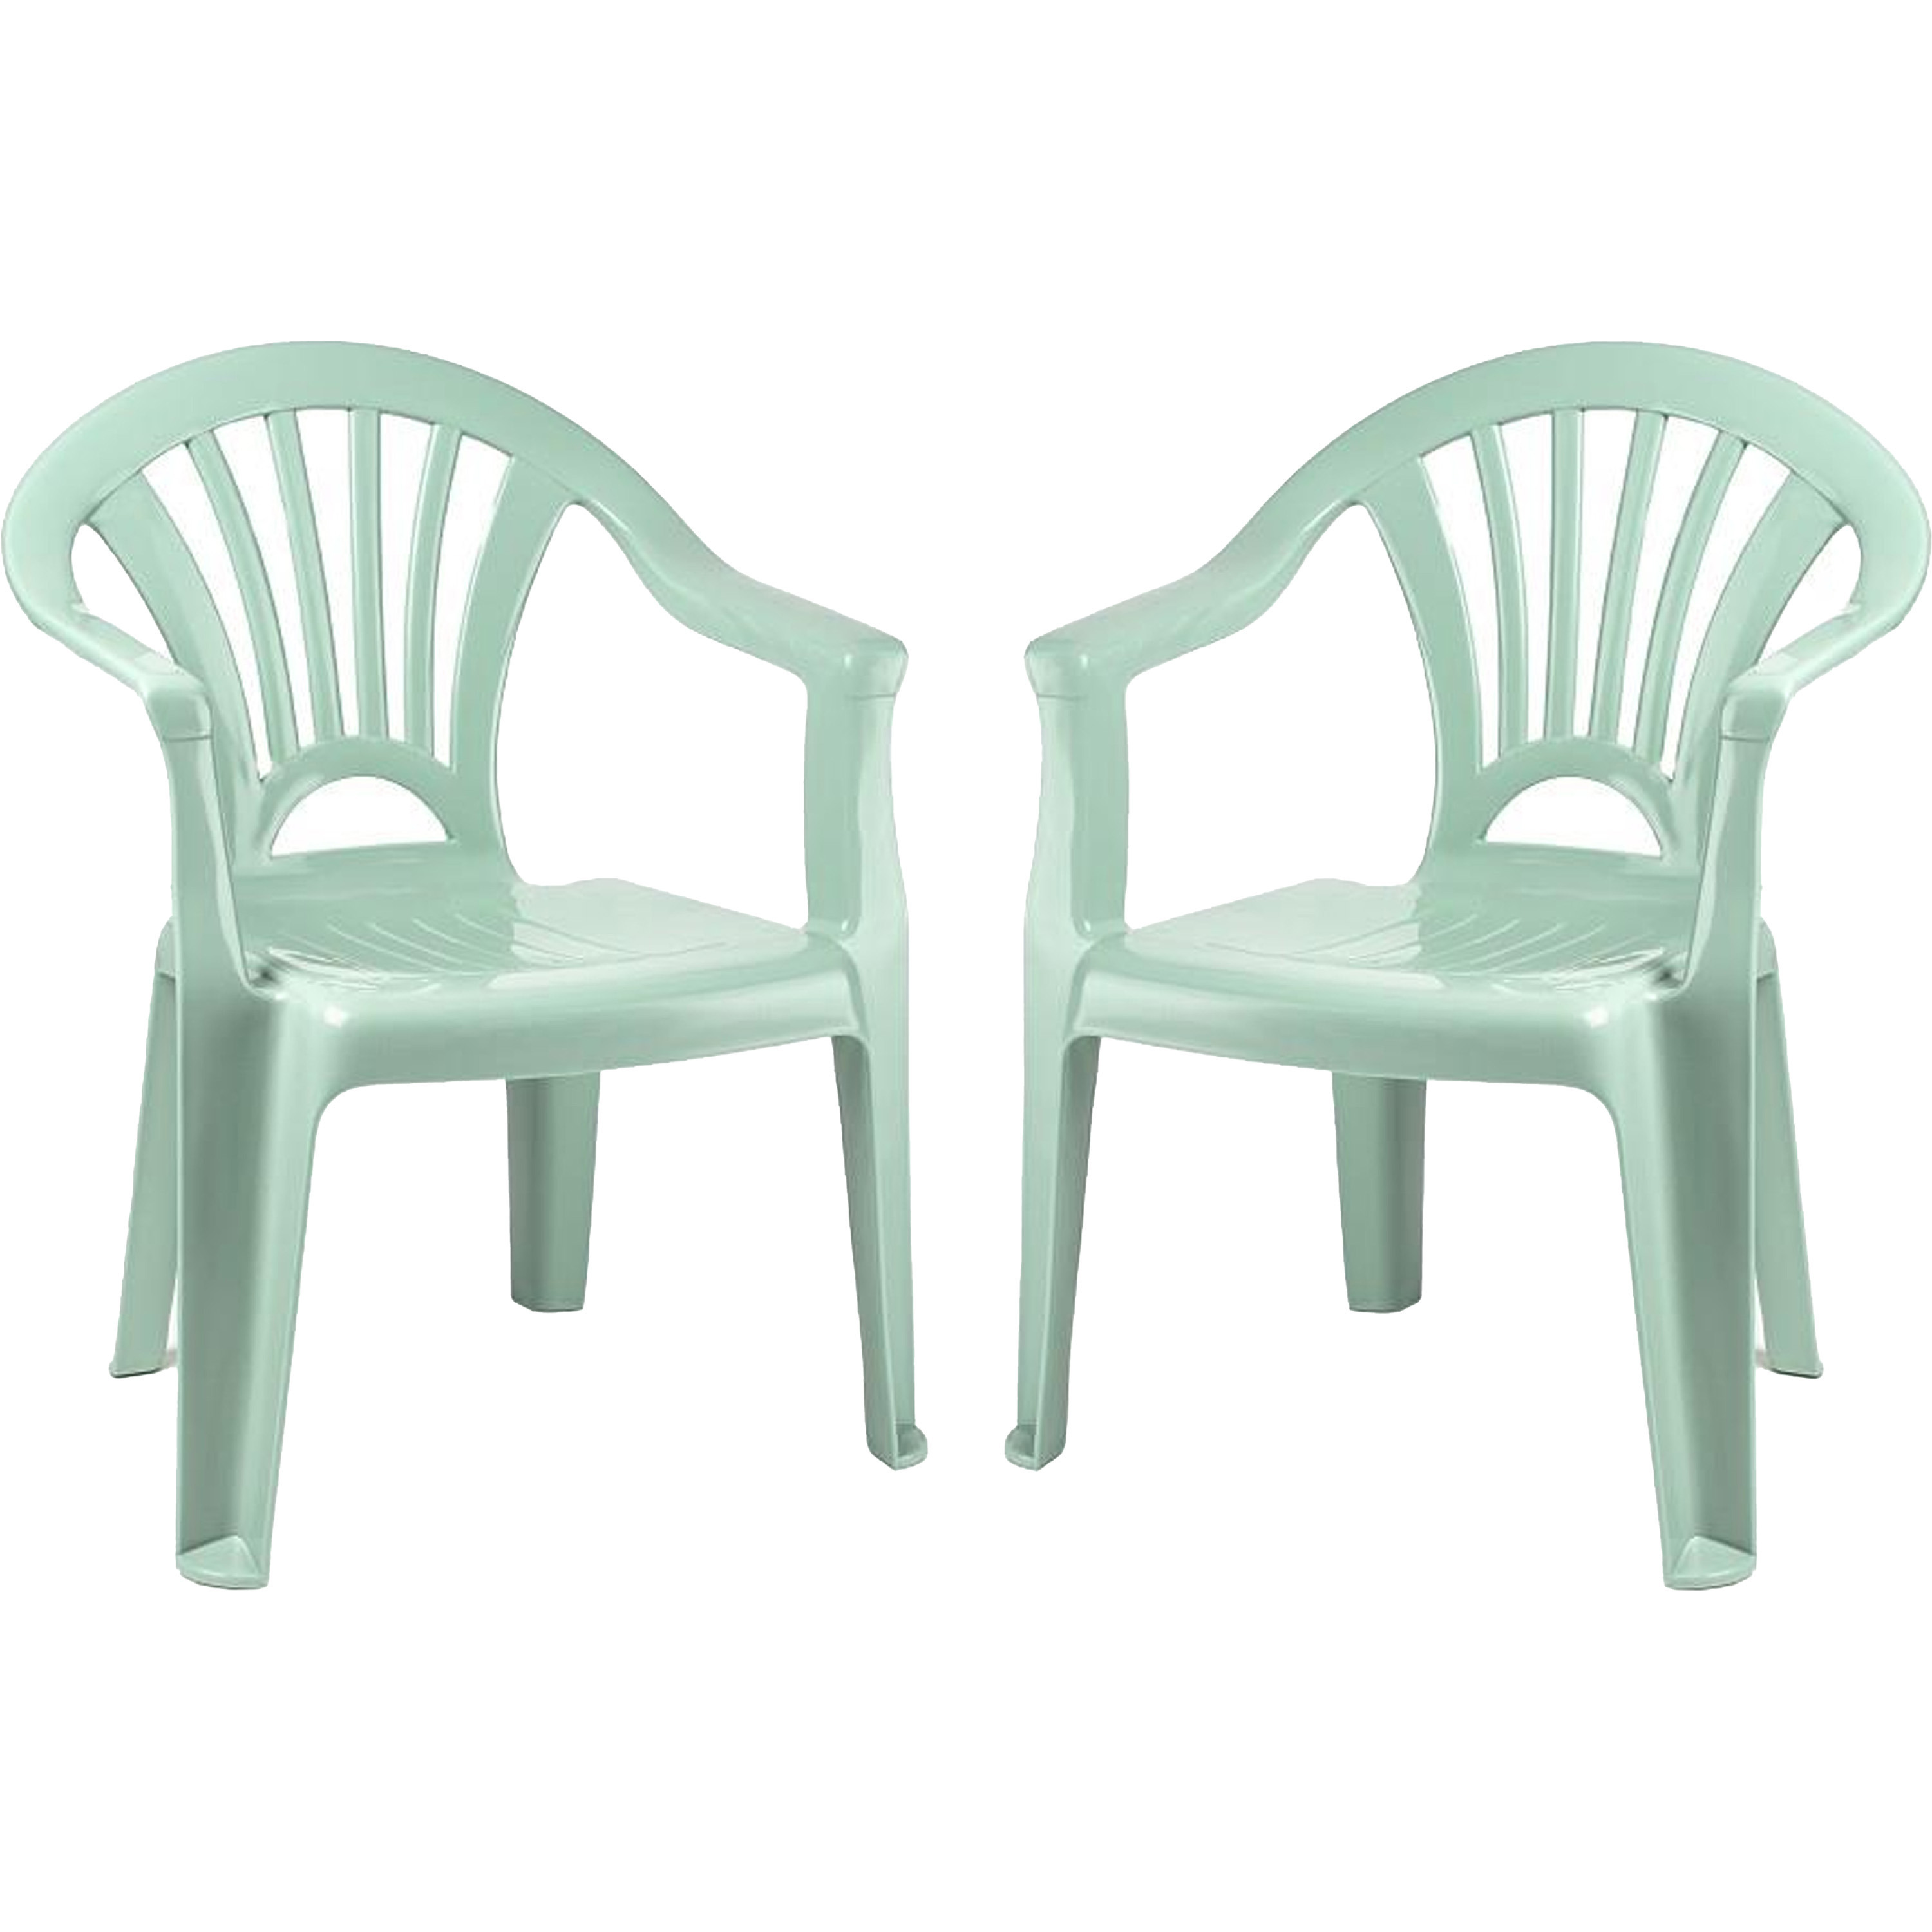 PlasticForte Kinderstoel - 2x stuks - kunststof - mintgroen - 35 x 28 x 50 cm - tuin/camping/slaapkamer -